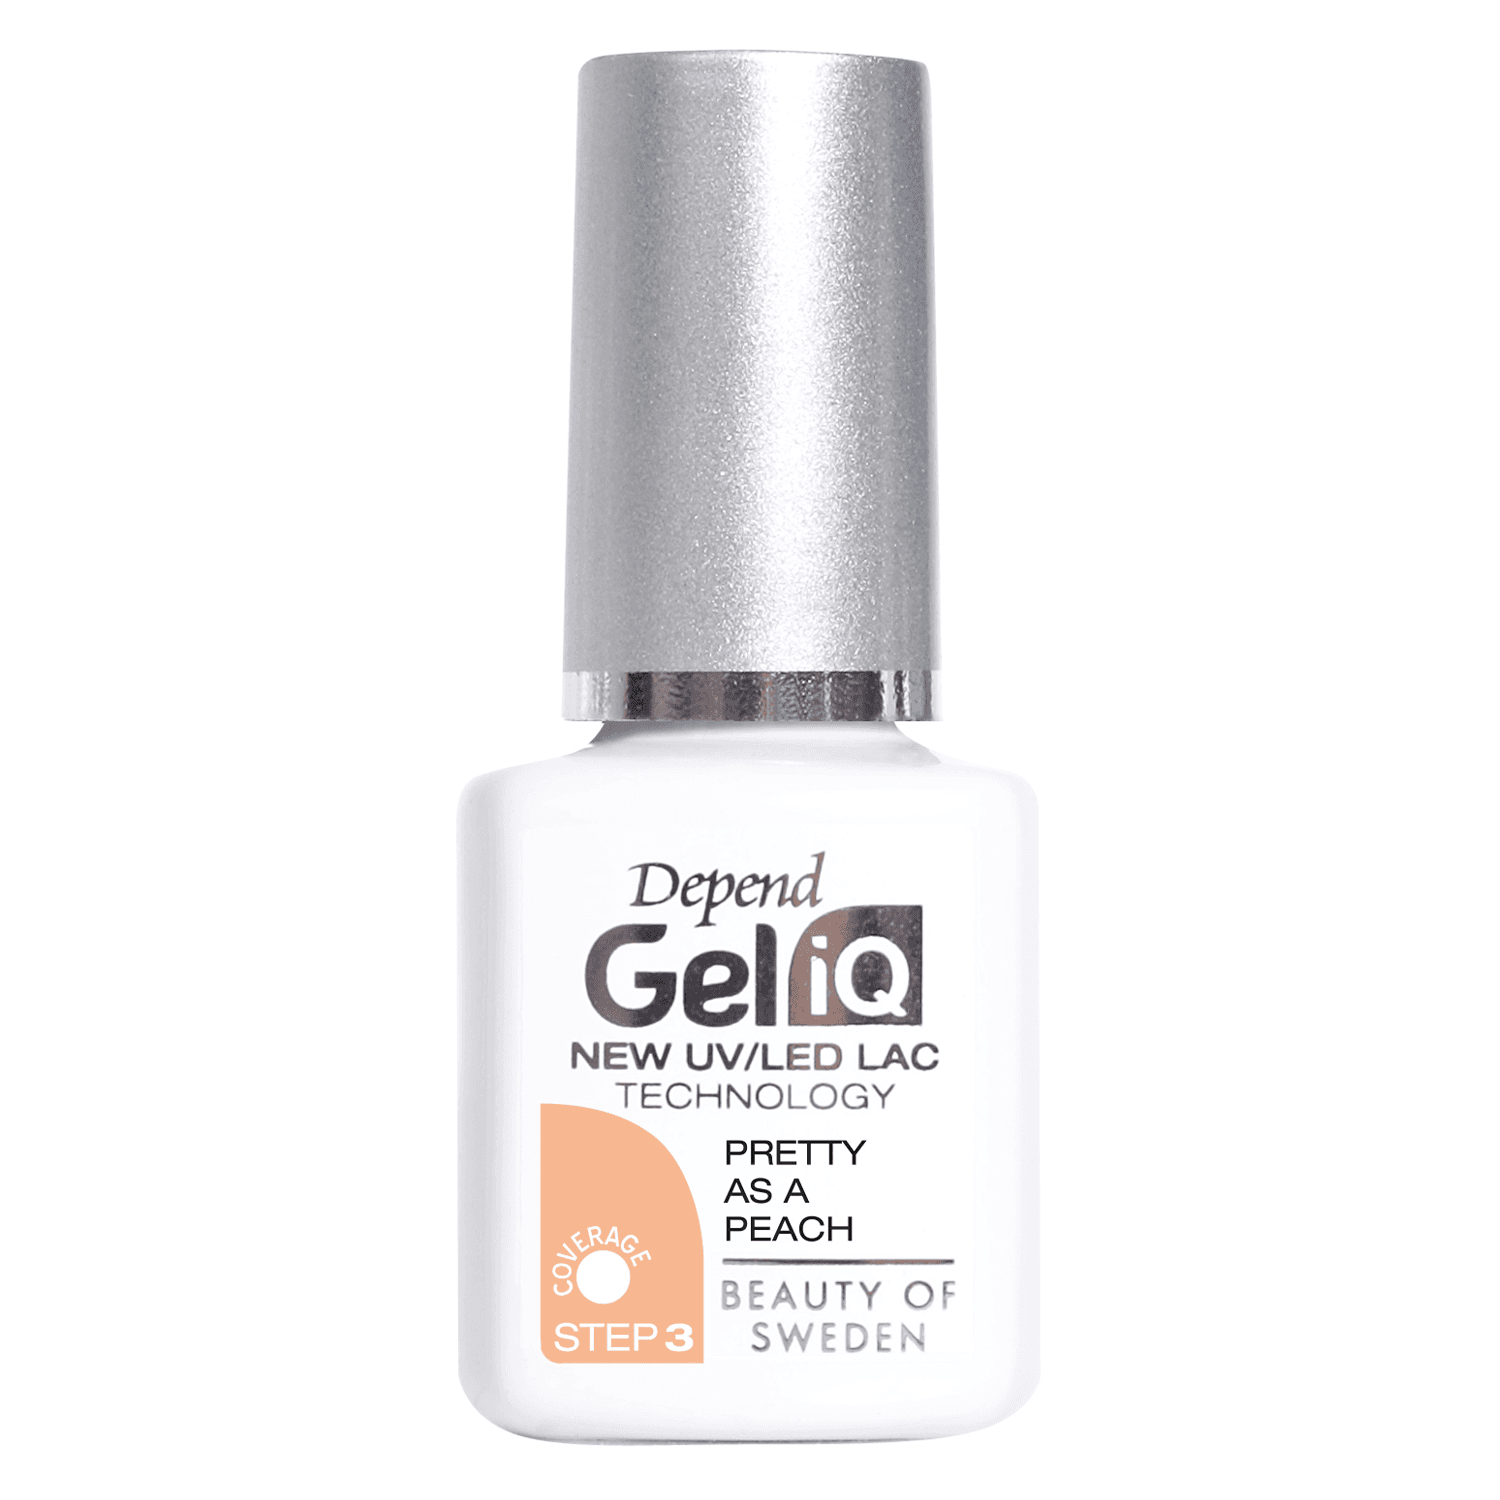 Gel iQ Color - Pretty as a Peach